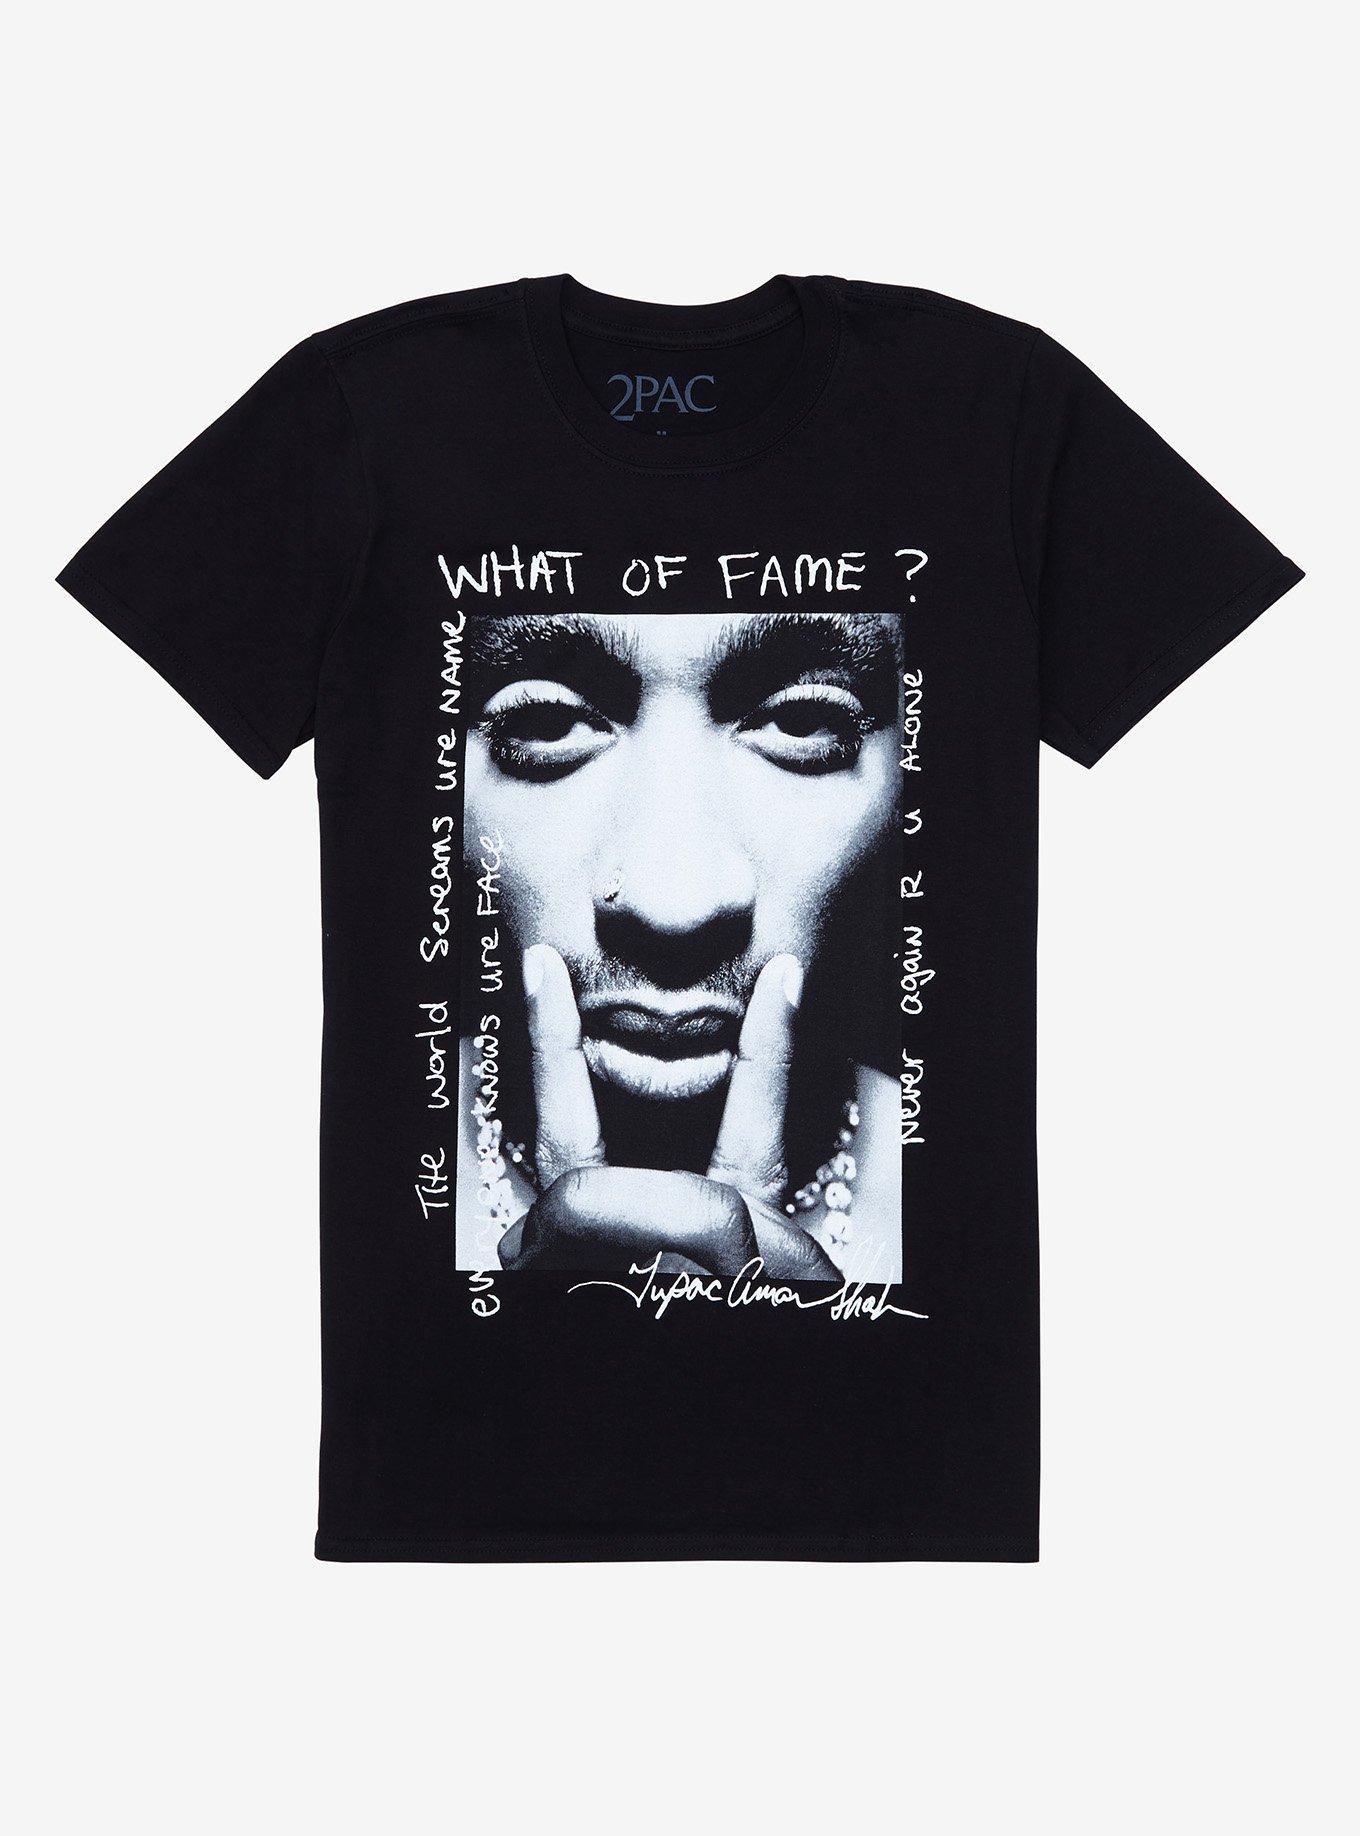 Tupac What Of Fame? T-Shirt, BLACK, hi-res